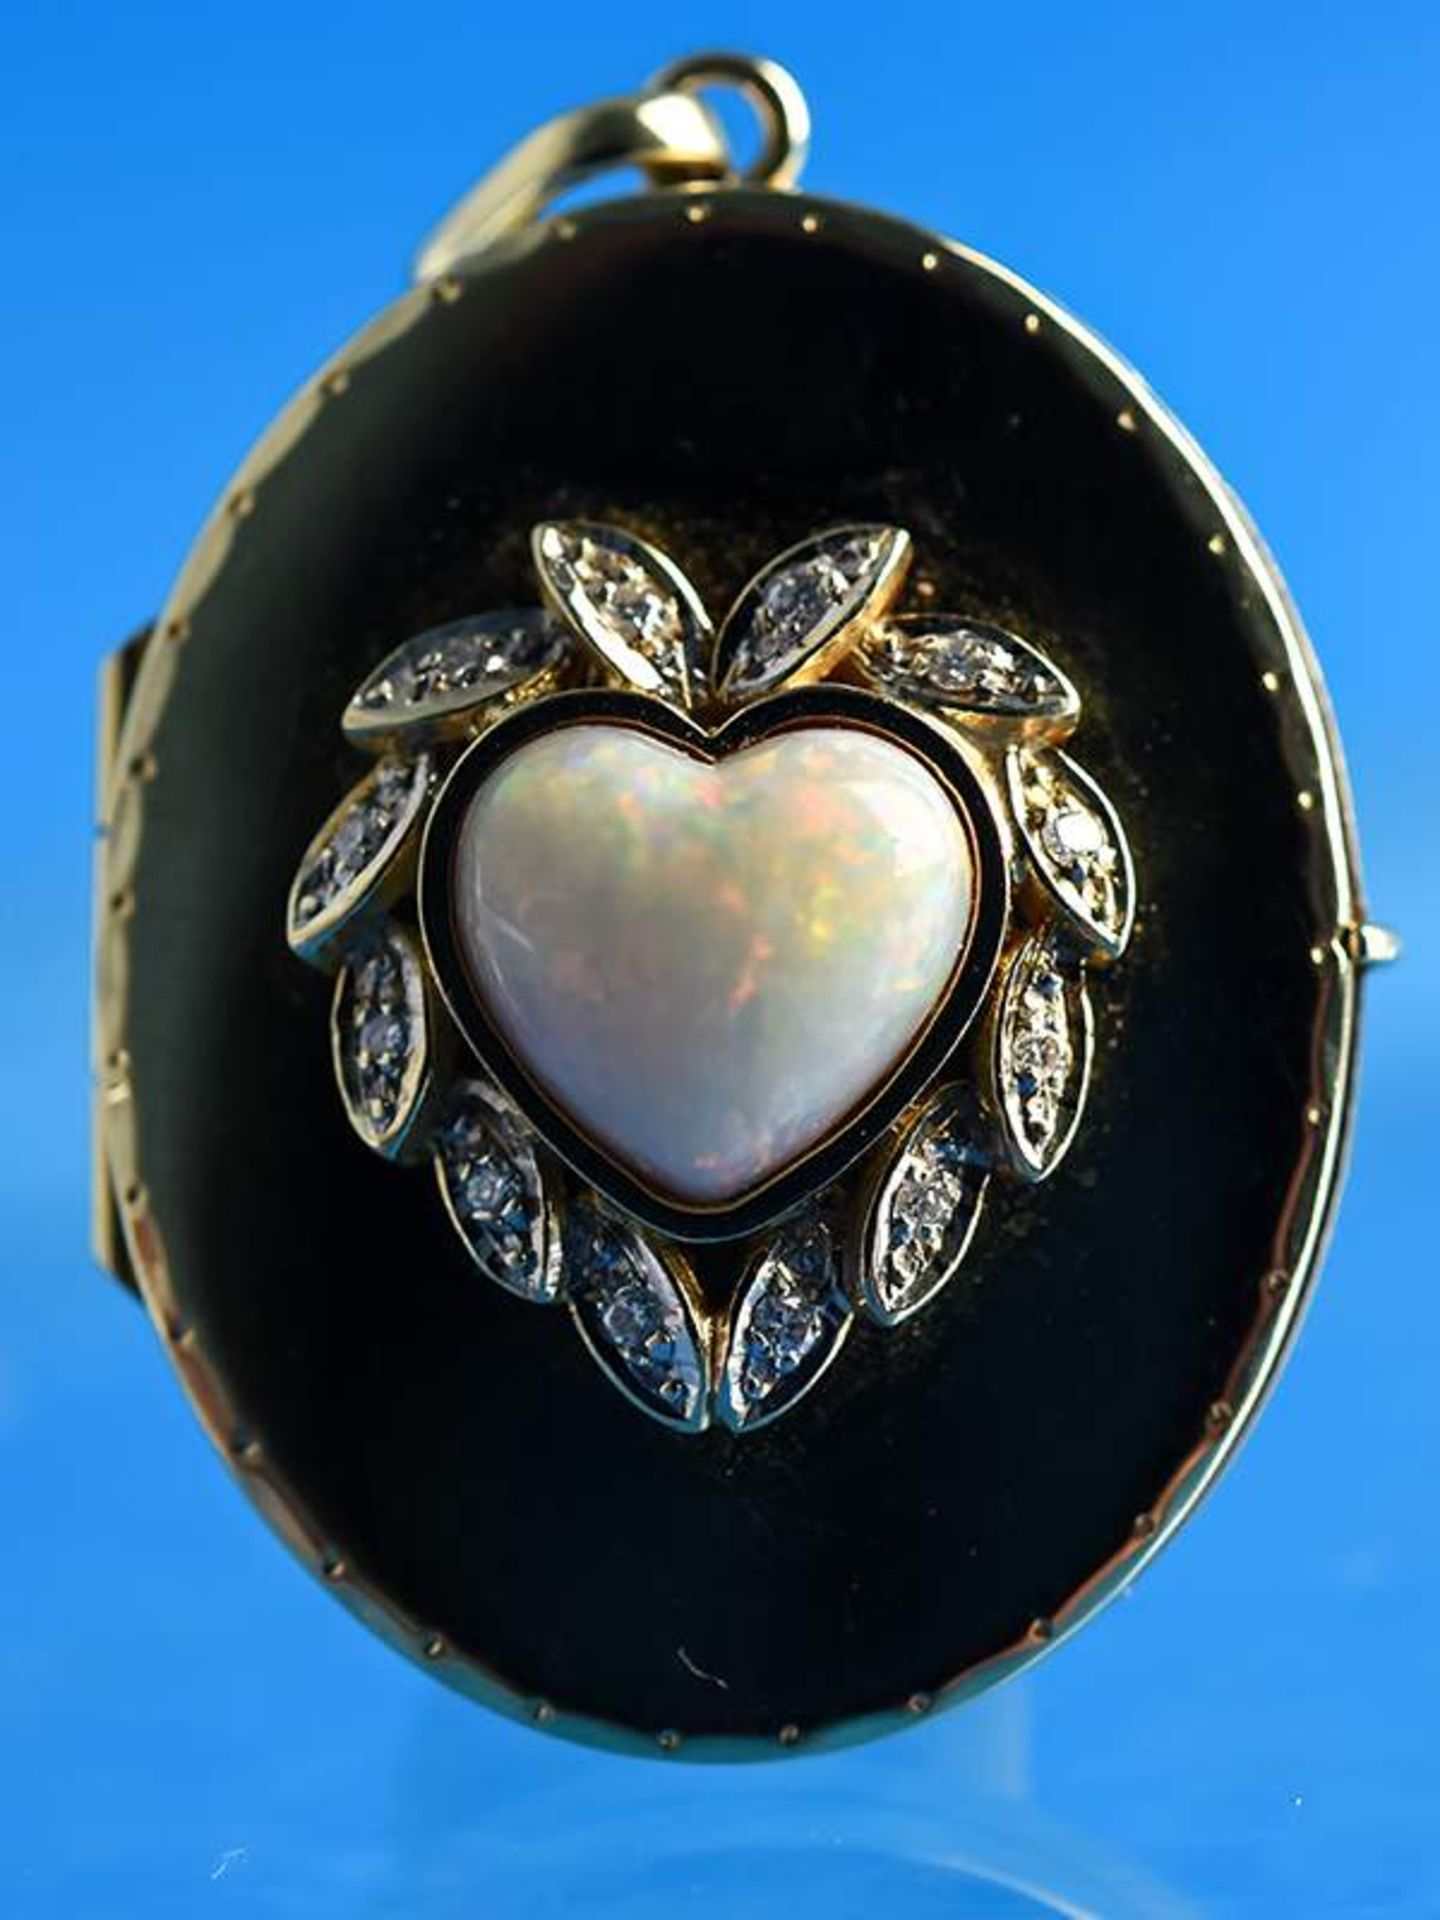 Medaillon mit Opal und kleinen Diamanten, 20. Jh.750/-Gelbgold. Gesamtgewicht ca. 10,7 g. - Bild 2 aus 5